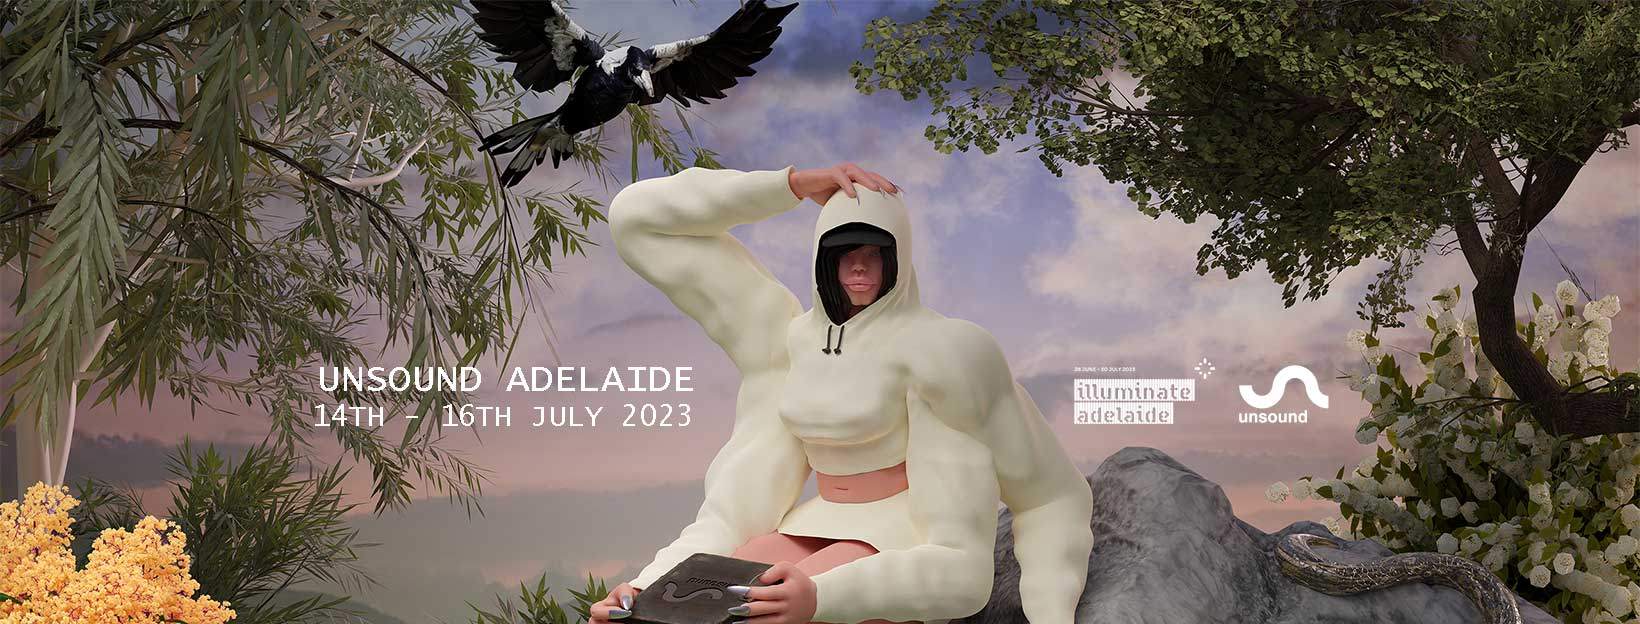 Unsound Adelaide - フライヤー表